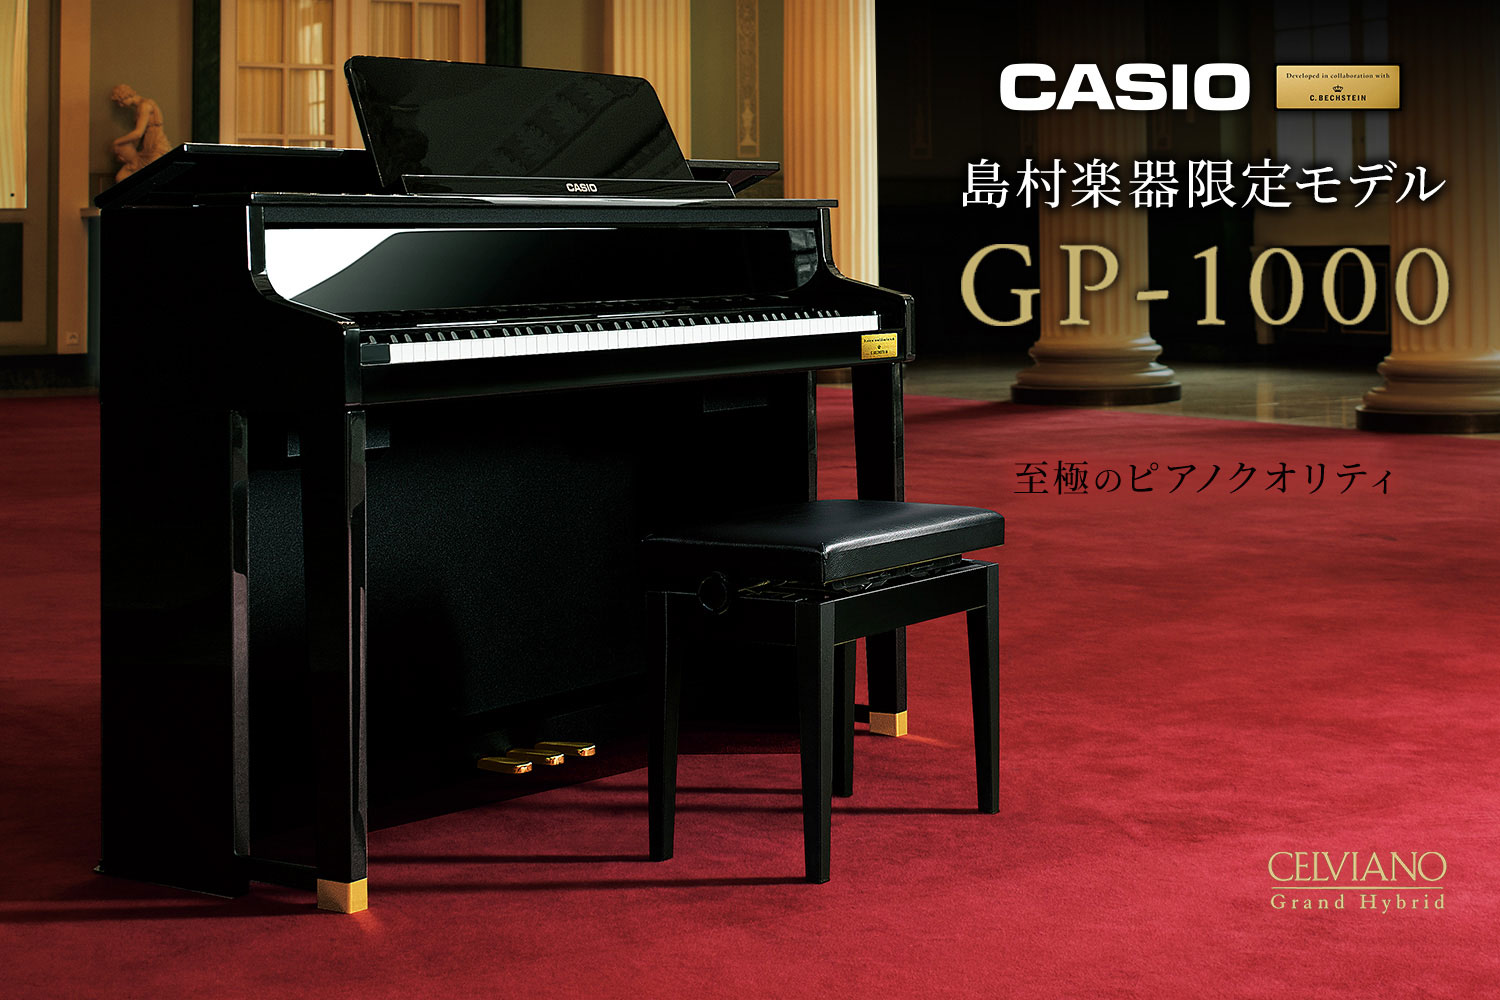 *広島府中店にGP-1000が新入荷しました！ CASIO×C.ベヒシュタイン コラボレーション電子ピアノ、島村楽器限定モデル「GP-1000」新入荷しました！]] ぜひ、店頭に弾きにお越しくださいませ！ *グランドピアノに徹底的にこだわった至極のクオリティ ピアノ作りの伝統を徹底的に研究、そしてカ […]